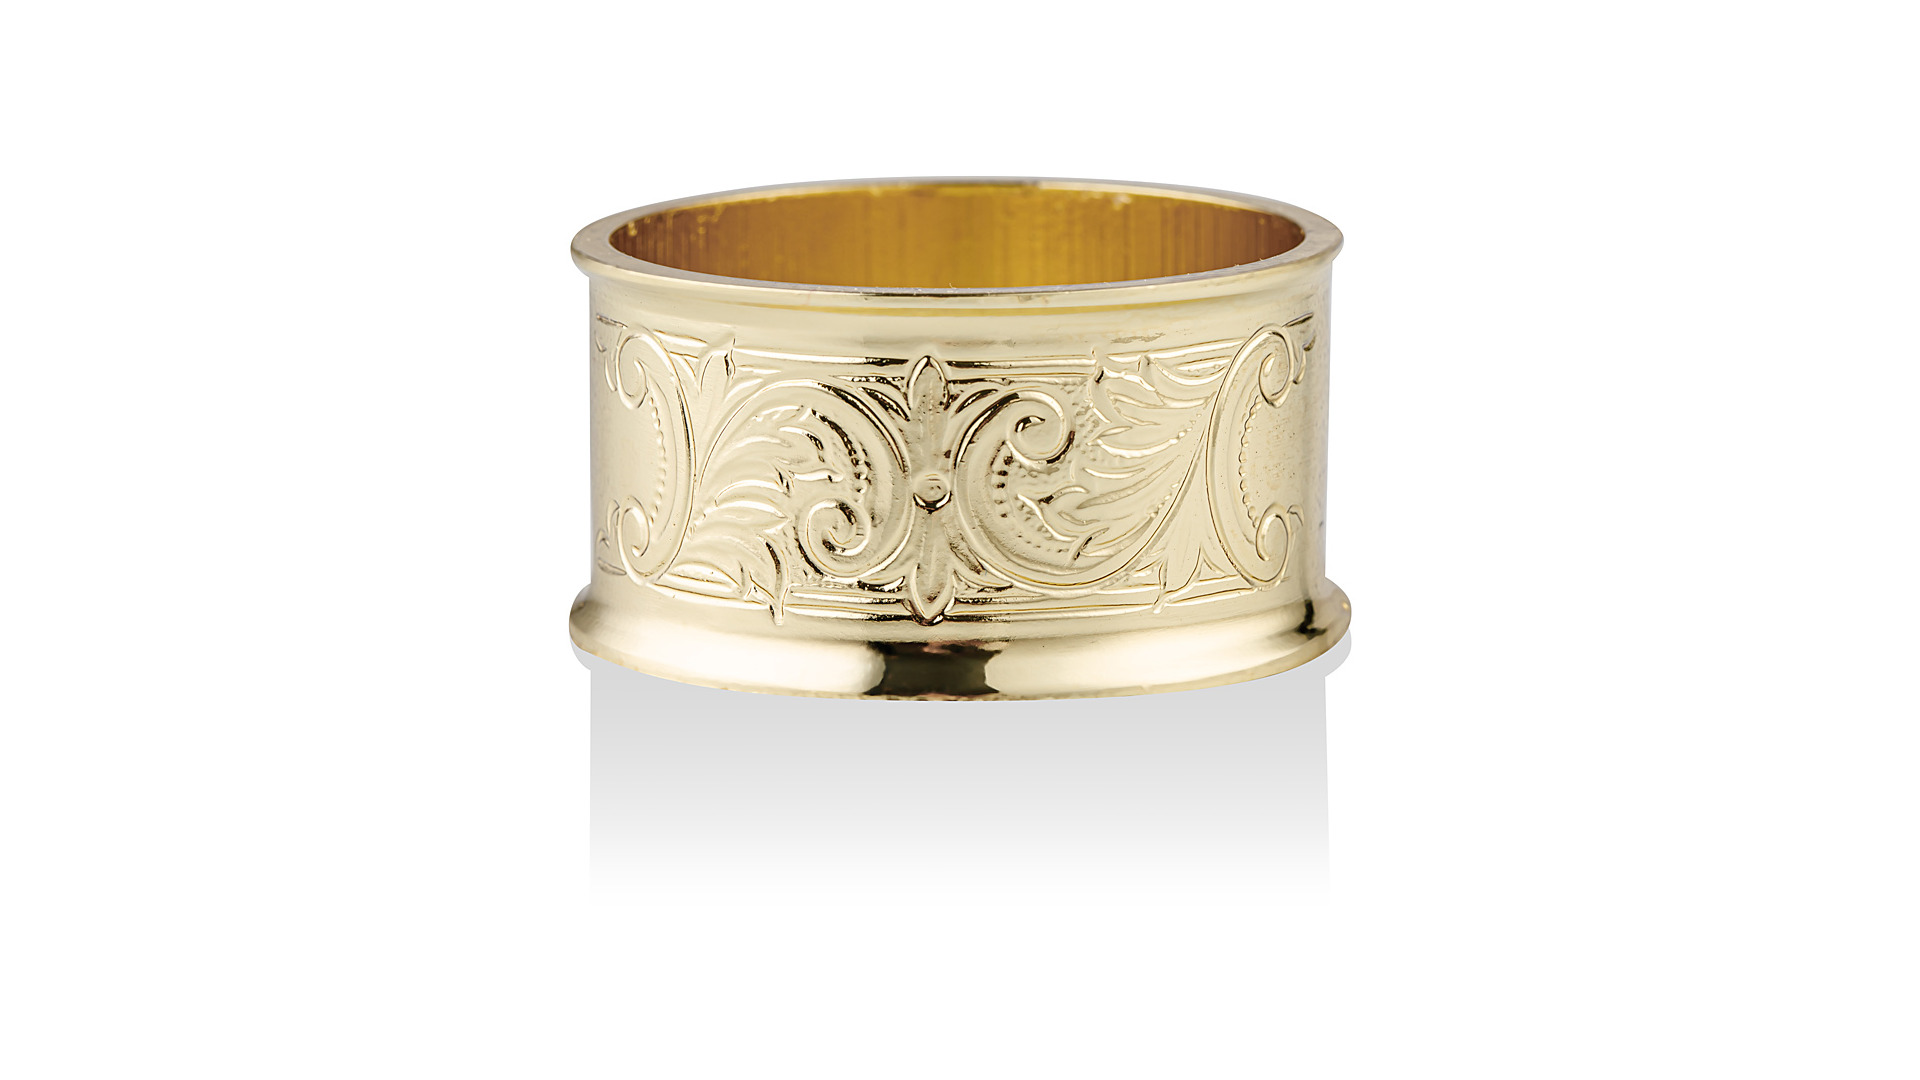 Набор колец для салфеток Queen Anne 4,5 см, 4 шт, сталь, золотой цвет